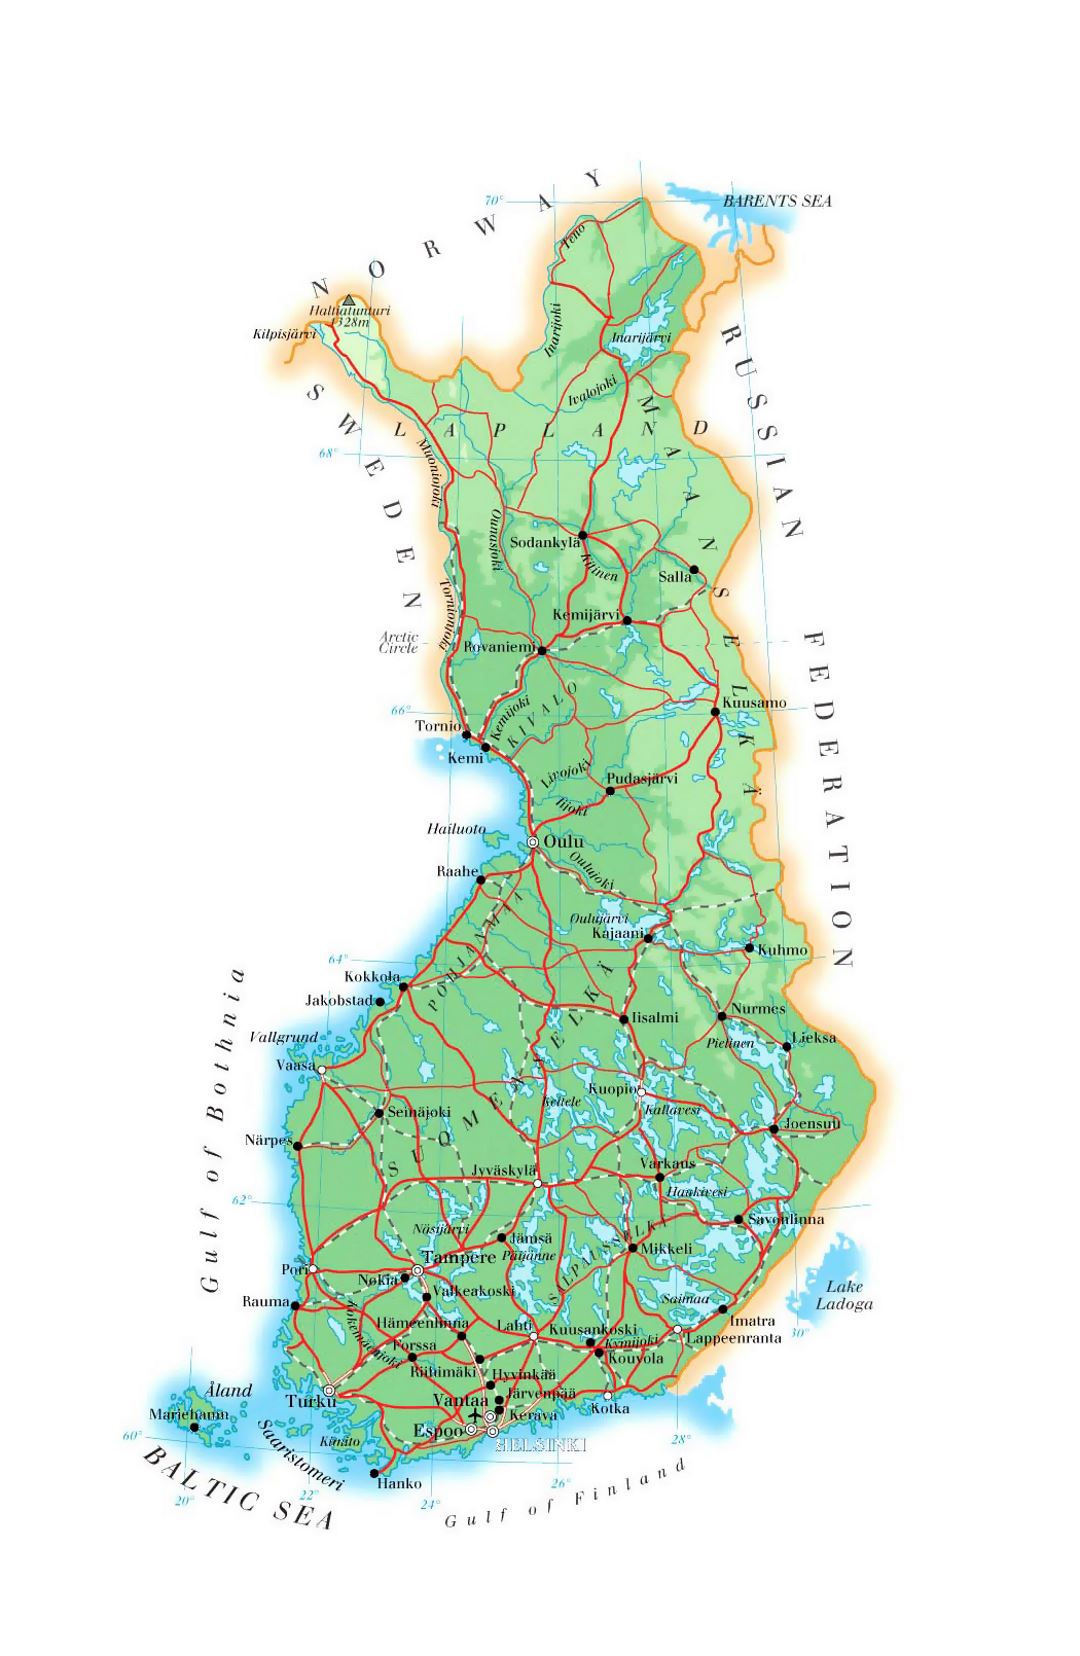 Mapa de elevación de Finlandia con carreteras, ciudades y aeropuertos